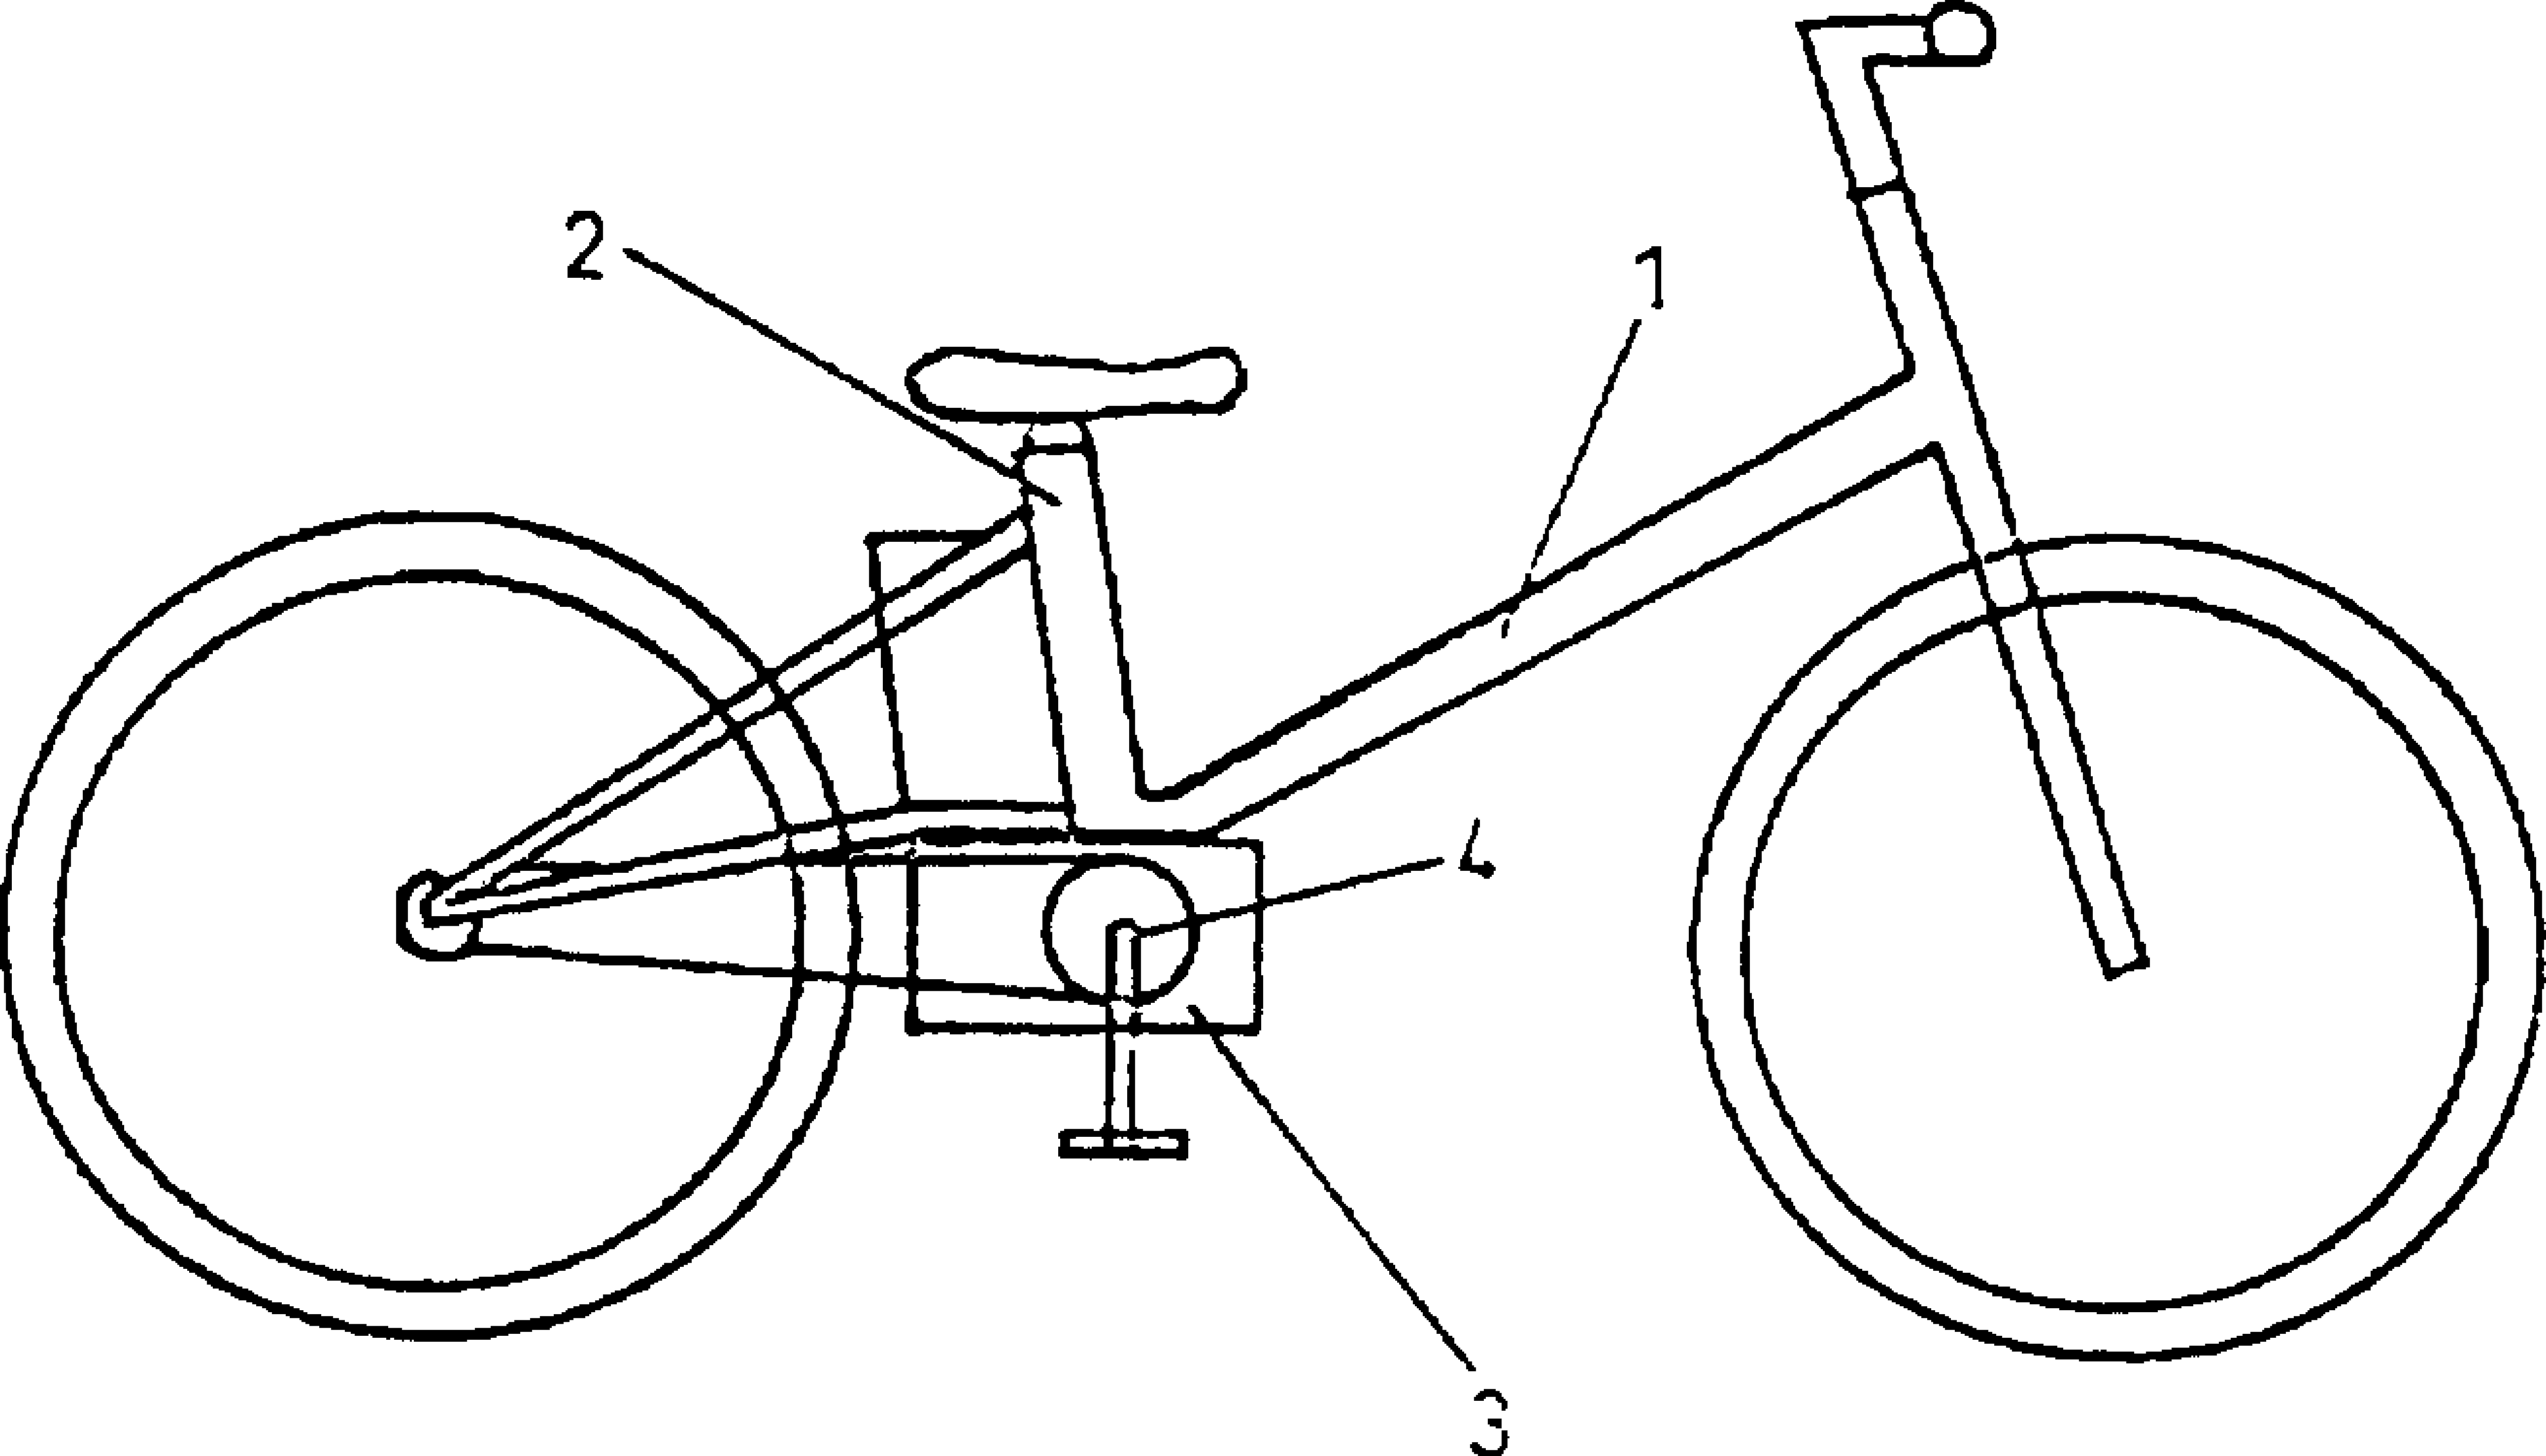 电动自行车简笔图片